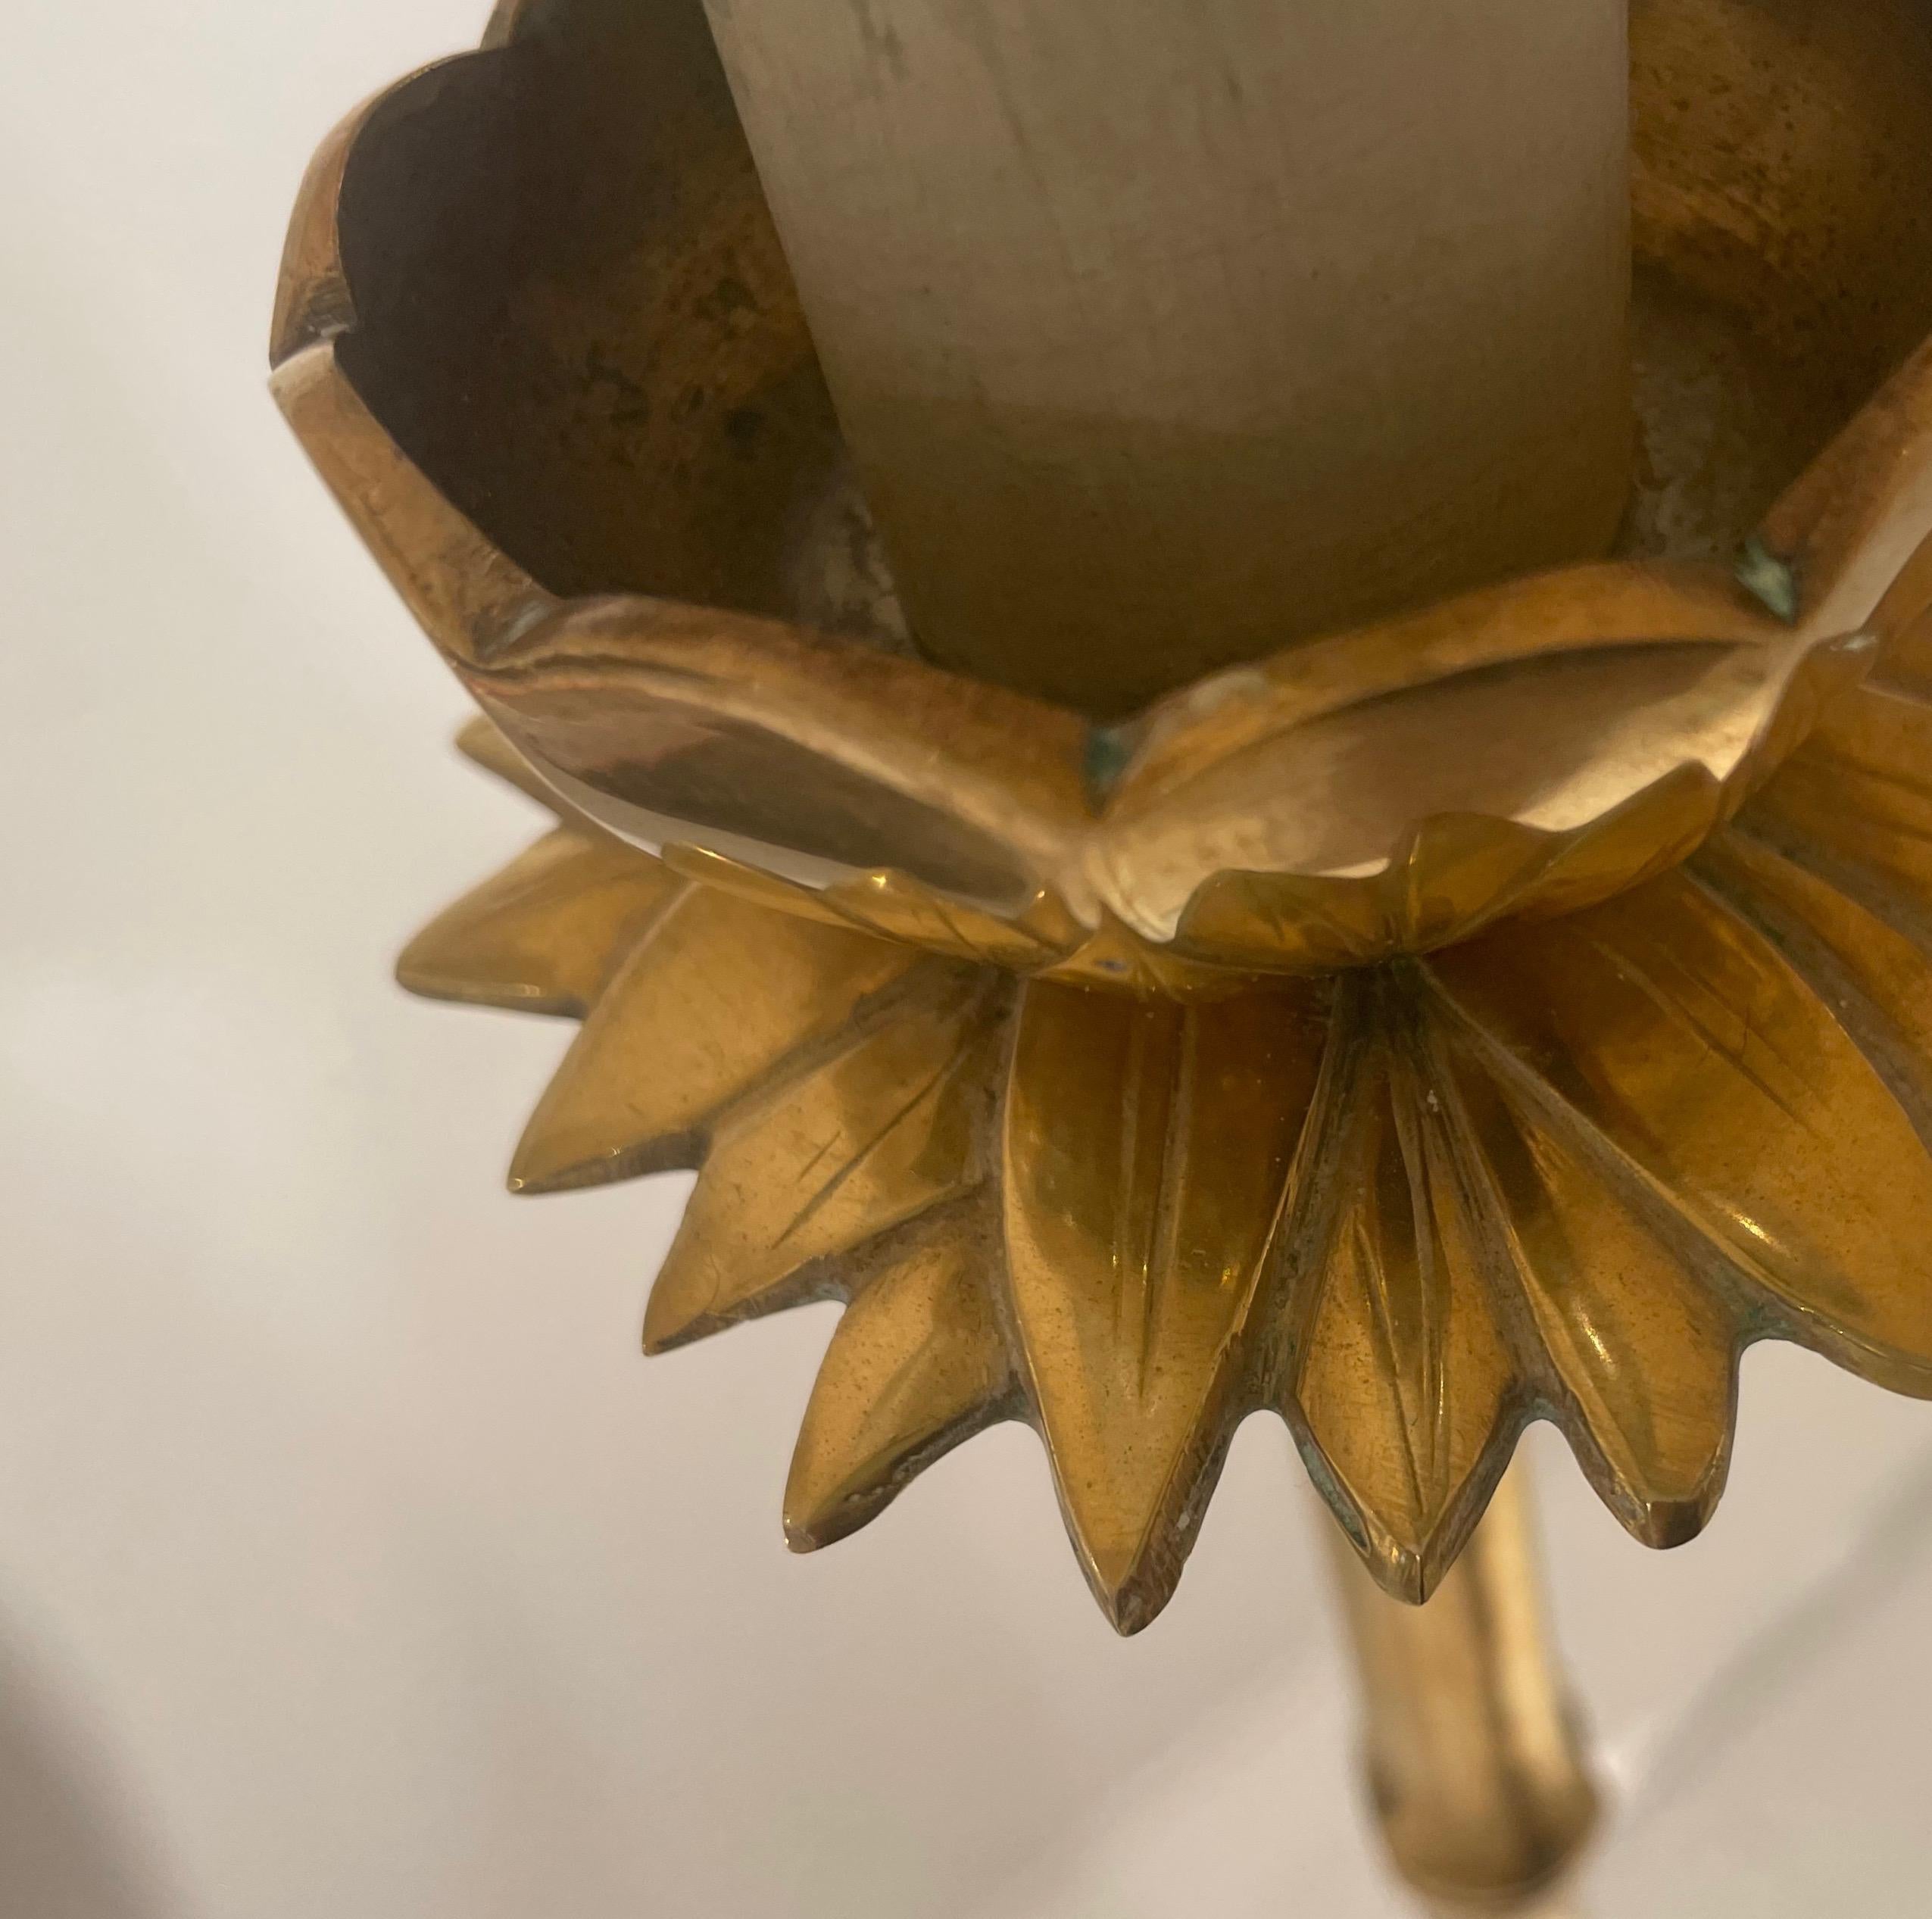 Elegant  lampadaire en laiton faux bambou avec une fleur de lotus finement sculptée sur le dessus.
Une lumière et un réflecteur opalin.
Par Maison Bagués - France.
1980.